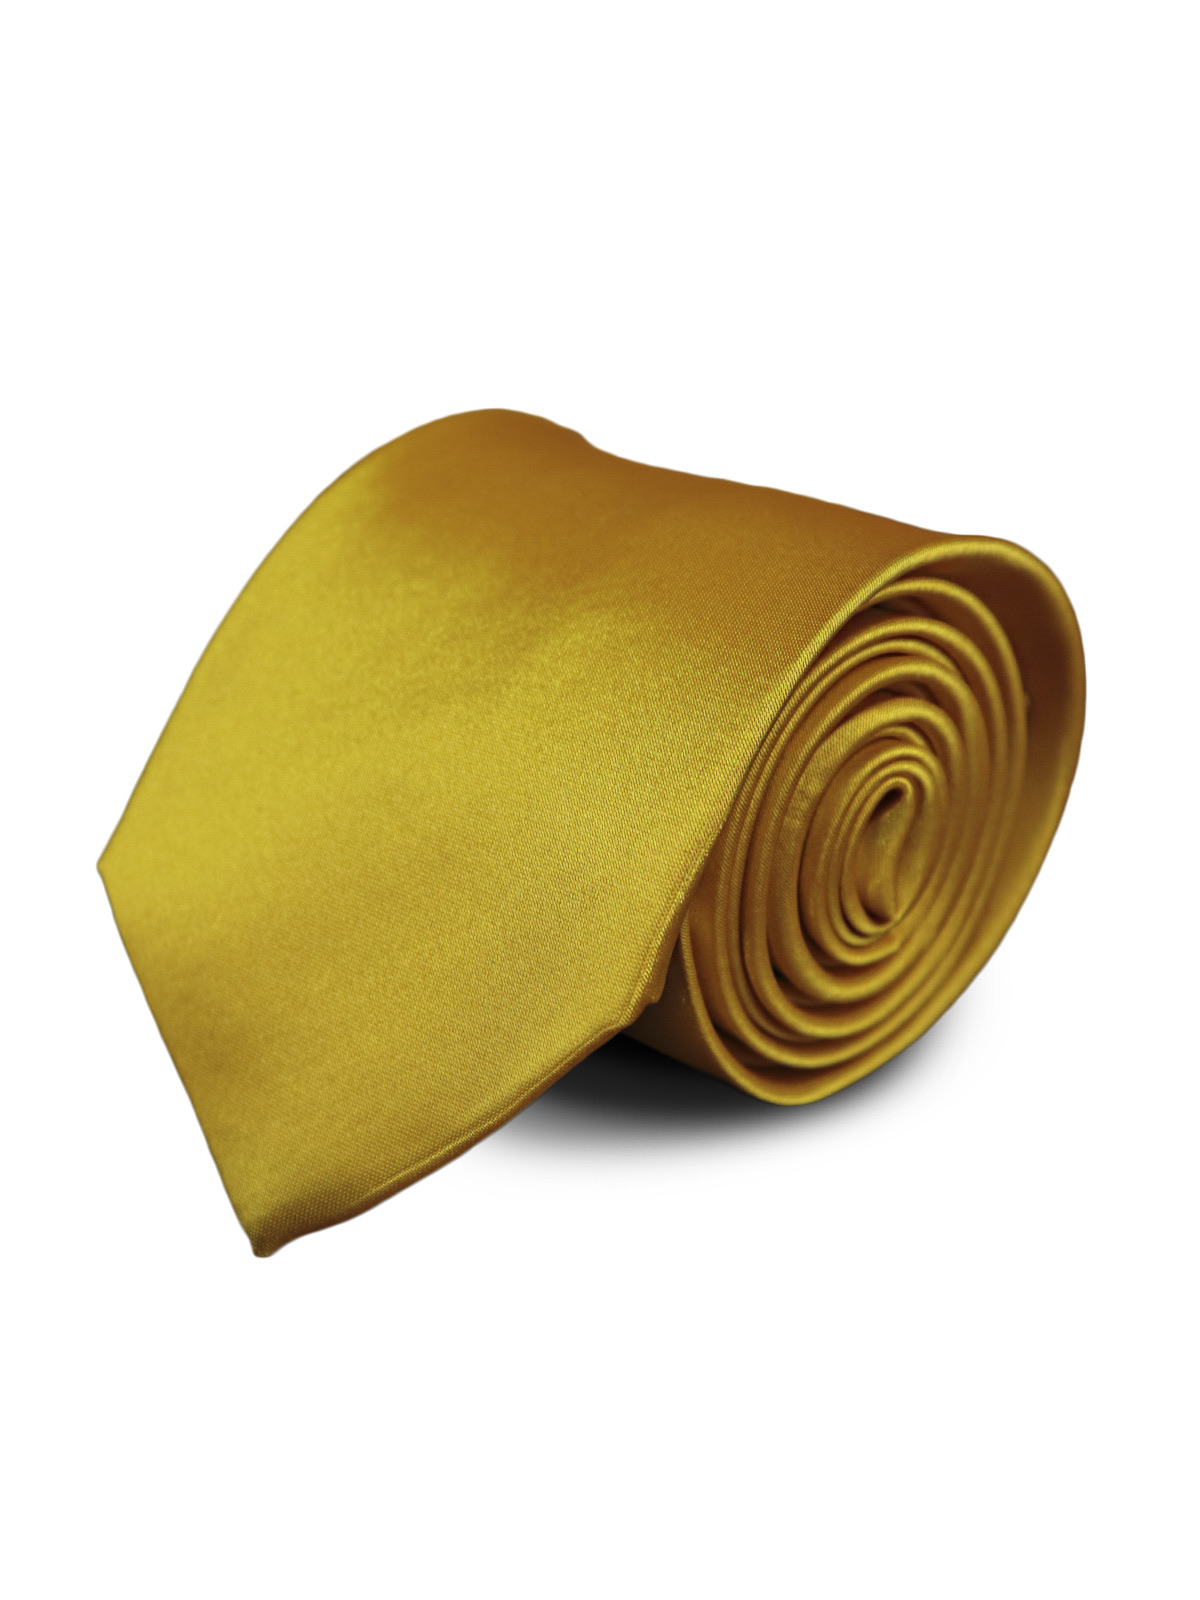 Галстук атласный широкий ярко-желтый описание: Фасон - Широкий галстук, Материал - Полиэстер, Цвет - Ярко-желтый, Размер - 8,5 см. х 150 см., Страна производства - Турция.